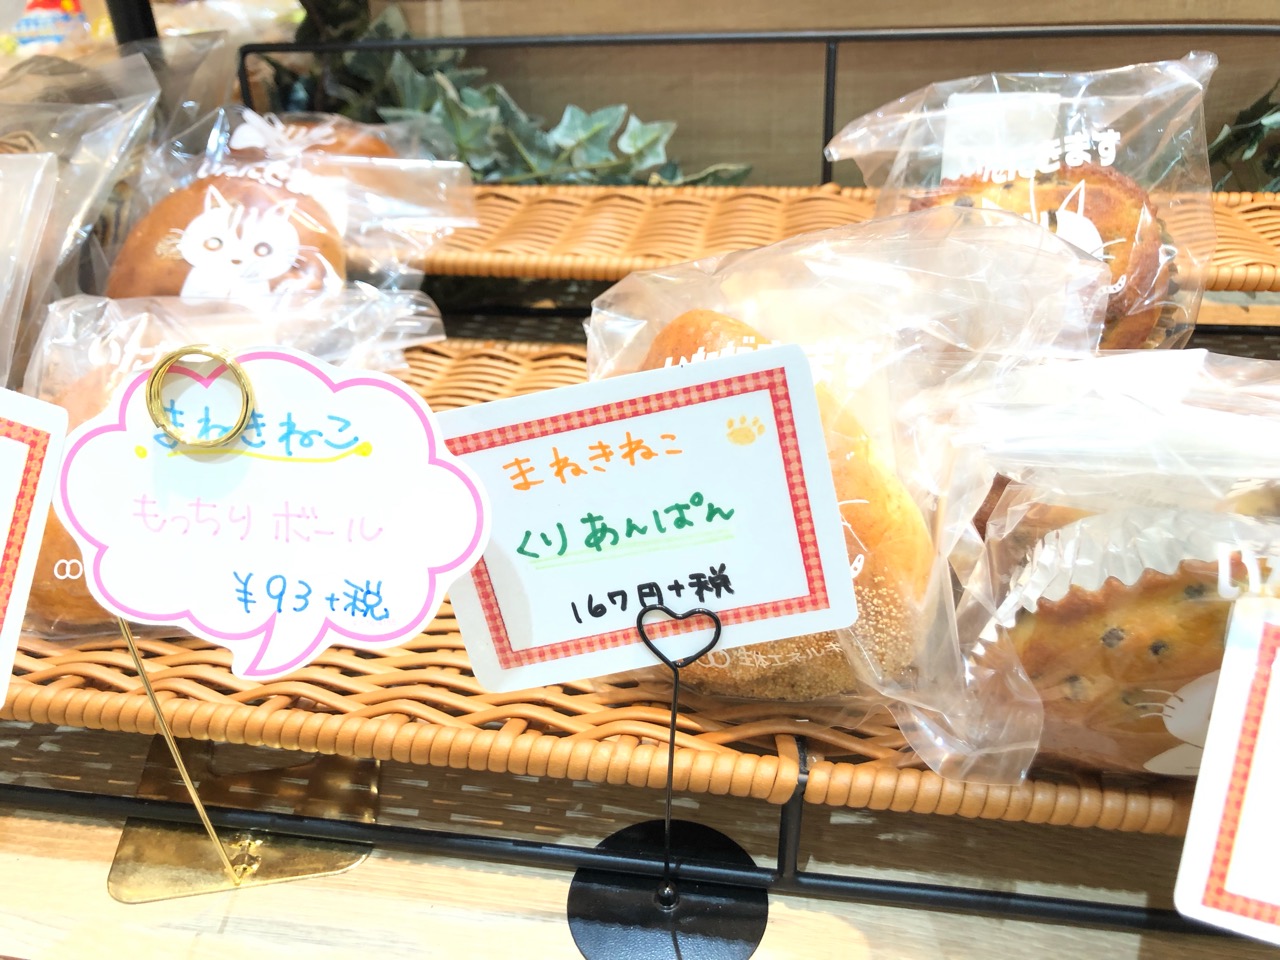 スーパーやまのぶで売られていたまねきねこのパン